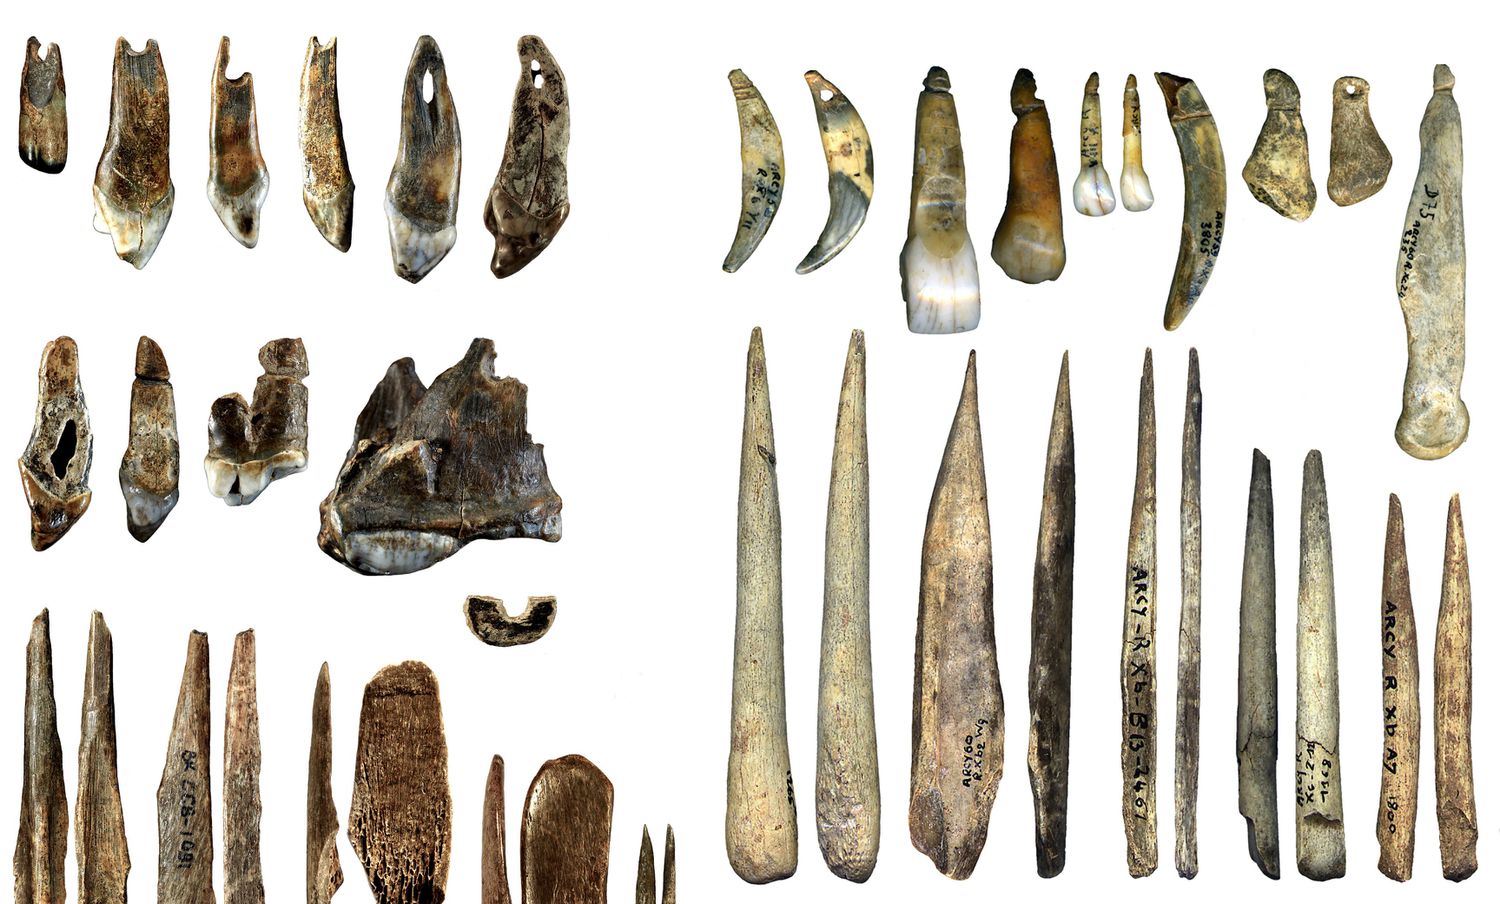 Crónica de Arqueología Twitter: "Comparación de colgantes y punzones de huesos tallados por sapiens de la cueva de Bacho Kiro-Bulgaria, hace 45.000 años y colgantes y punzones de neandertales documentados